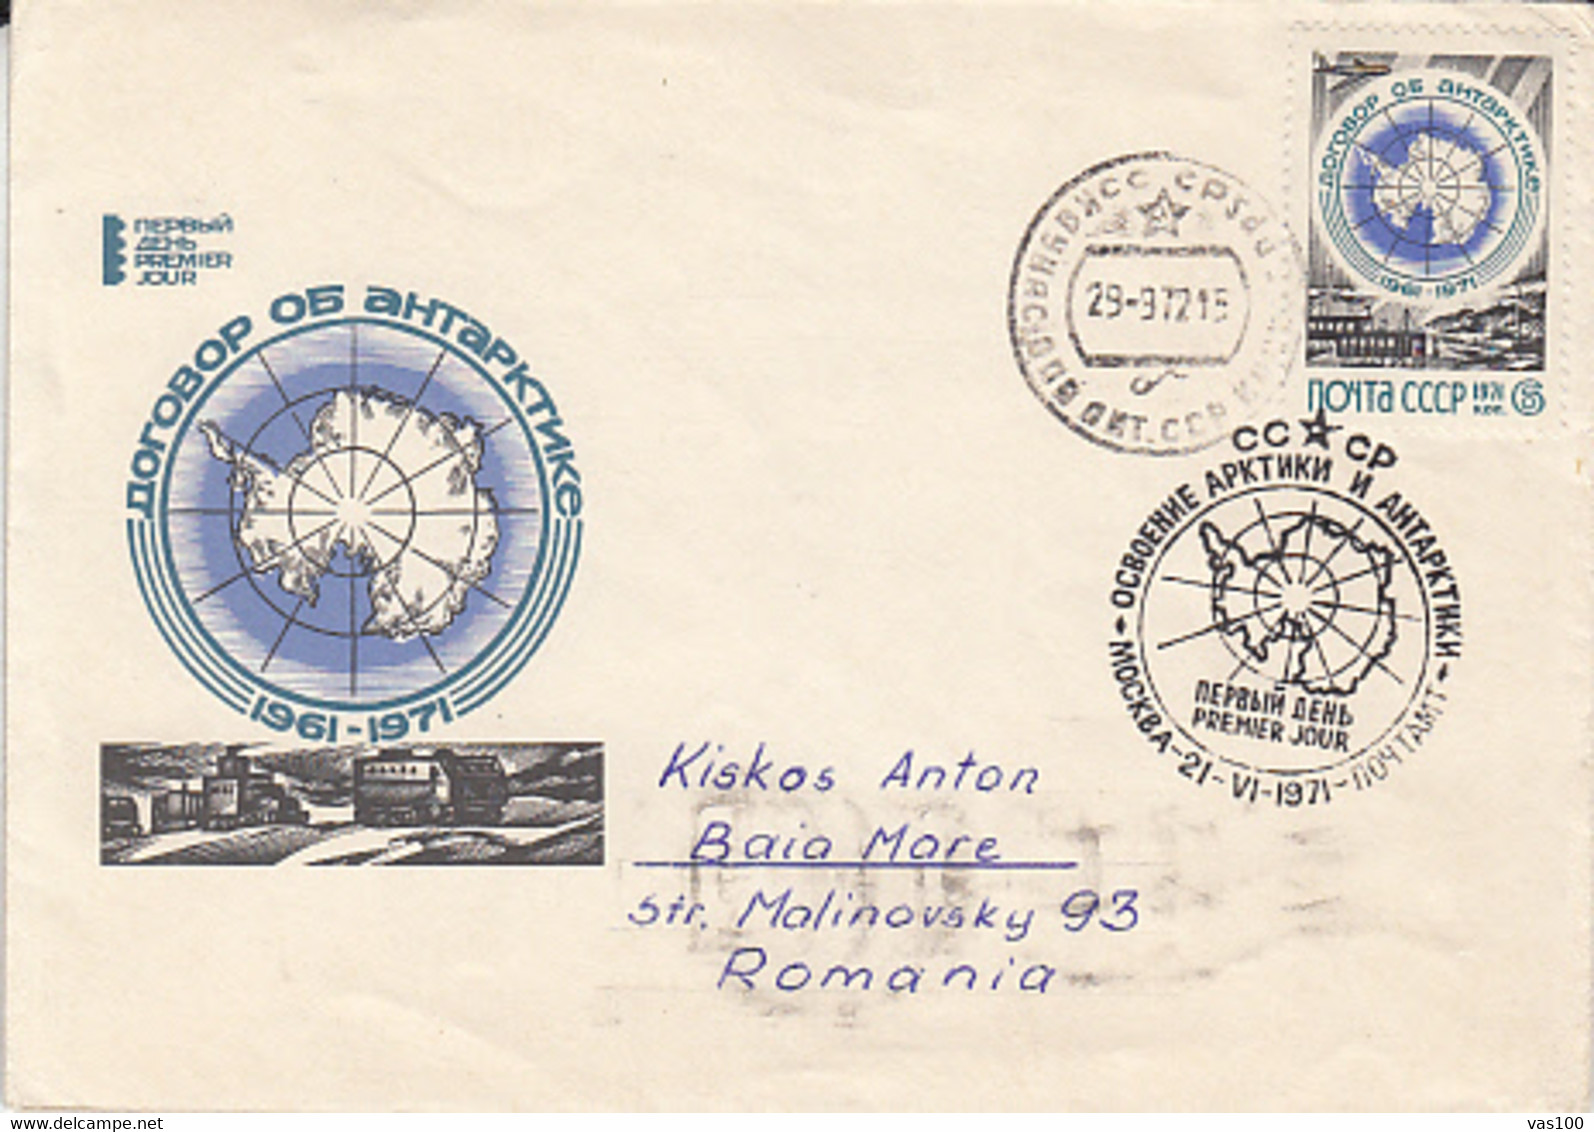 SOUTH POLE, ANTARCTIC TREATY, COVER FDC, 1972, RUSSIA - Antarctic Treaty